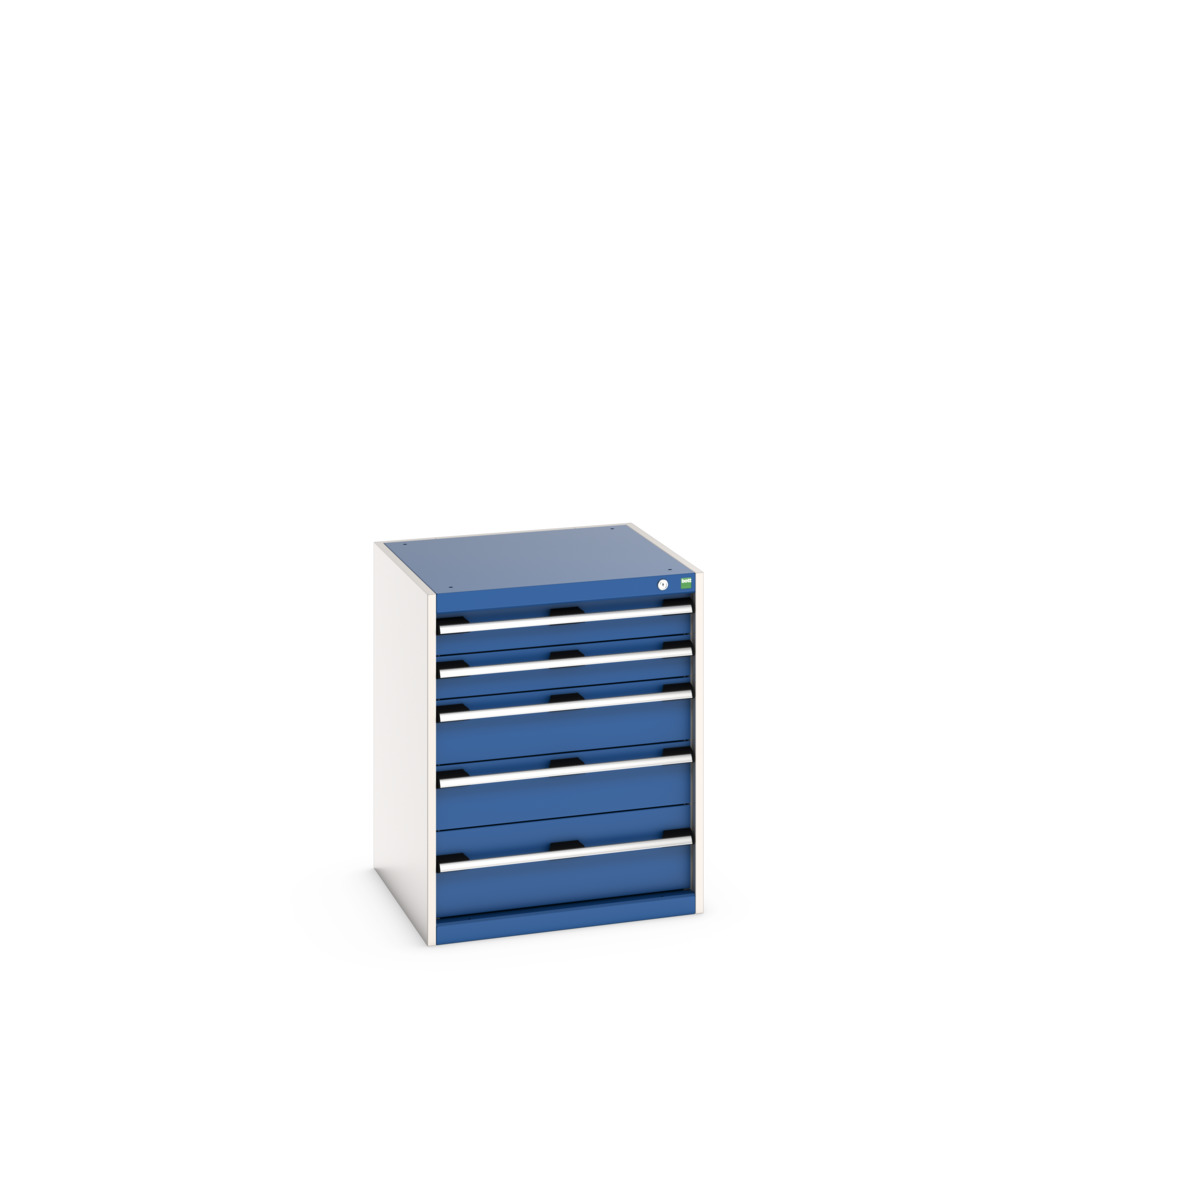 40019035.11V - cubio drawer cabinet